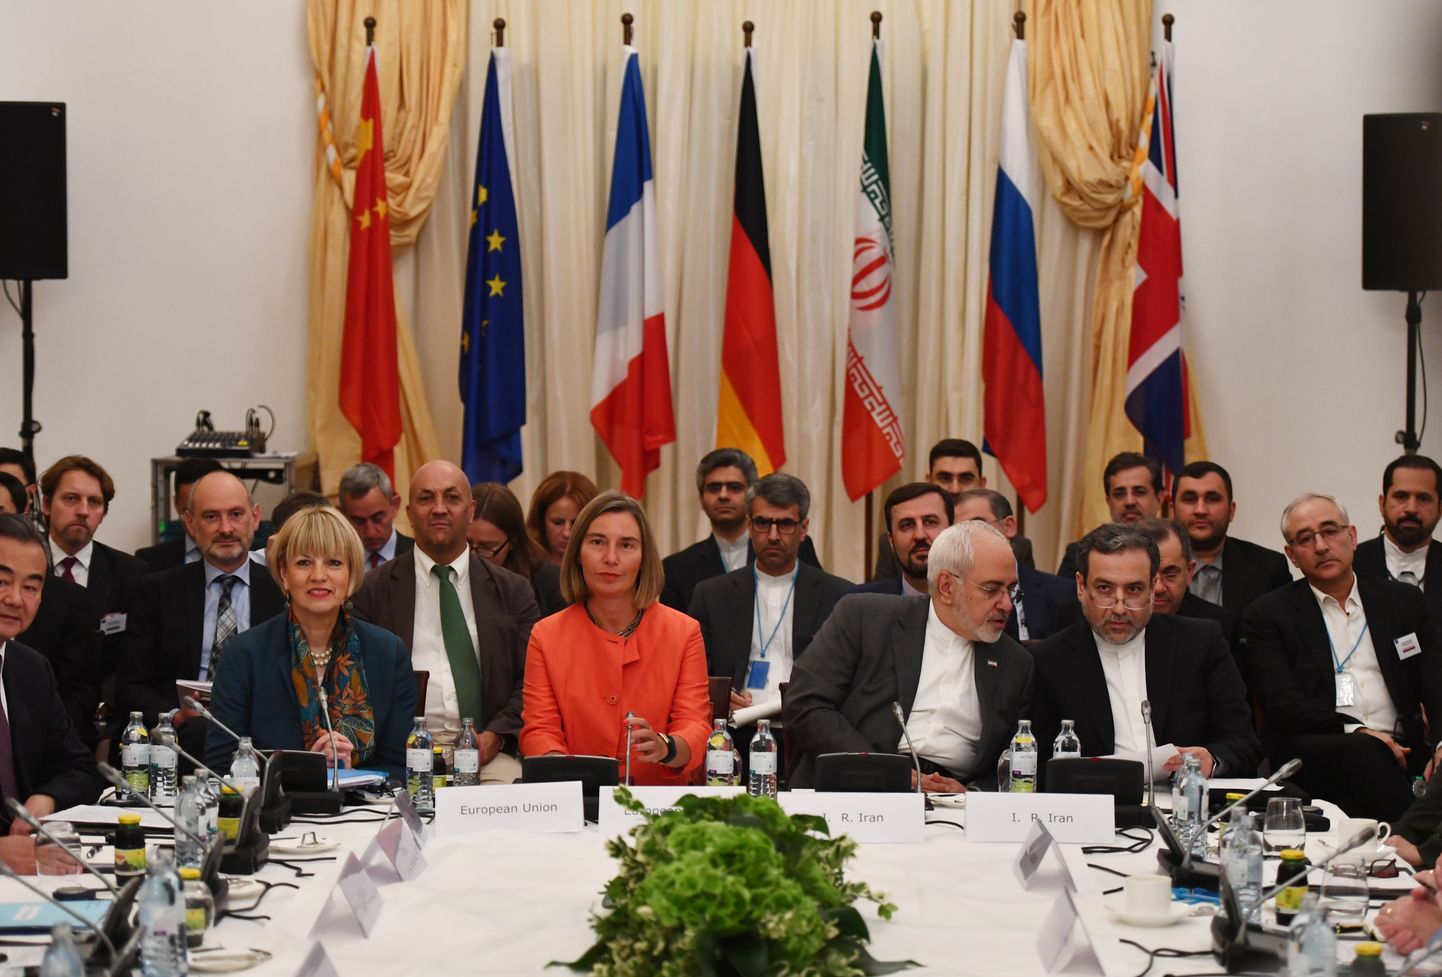 Suurriikide välisministrid kohtusid täna Viinis, et arutada Iraani tuumaleppe päästmist.